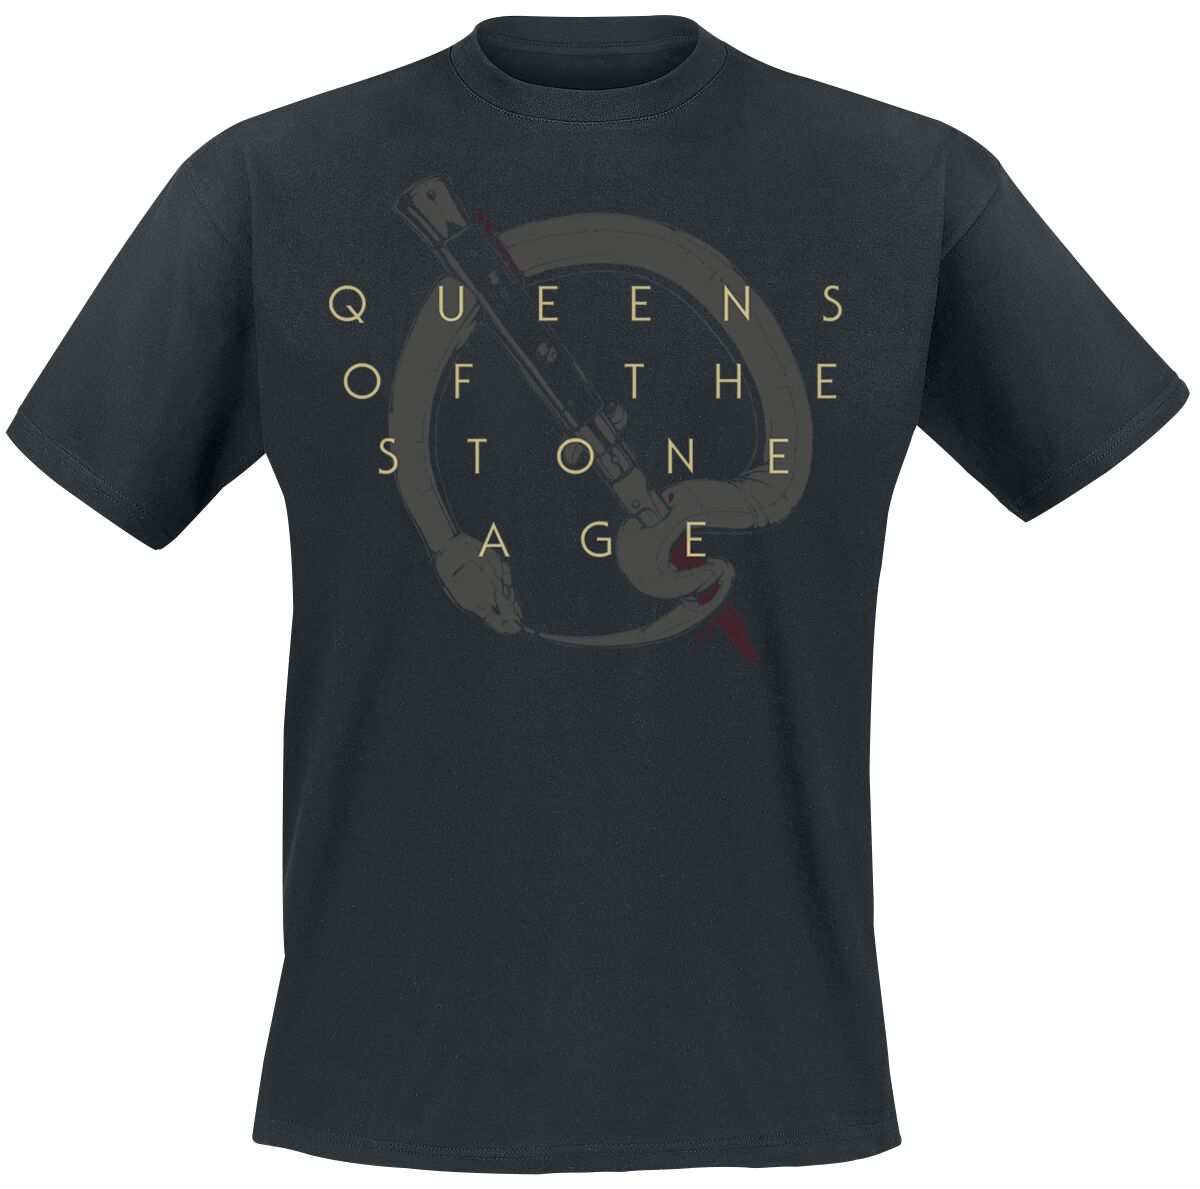 Queens Of The Stone Age T-Shirt - In Times New Roman - Bad Dog - S bis 3XL - für Männer - Größe 3XL - schwarz  - Lizenziertes Merchandise! von Queens Of The Stone Age